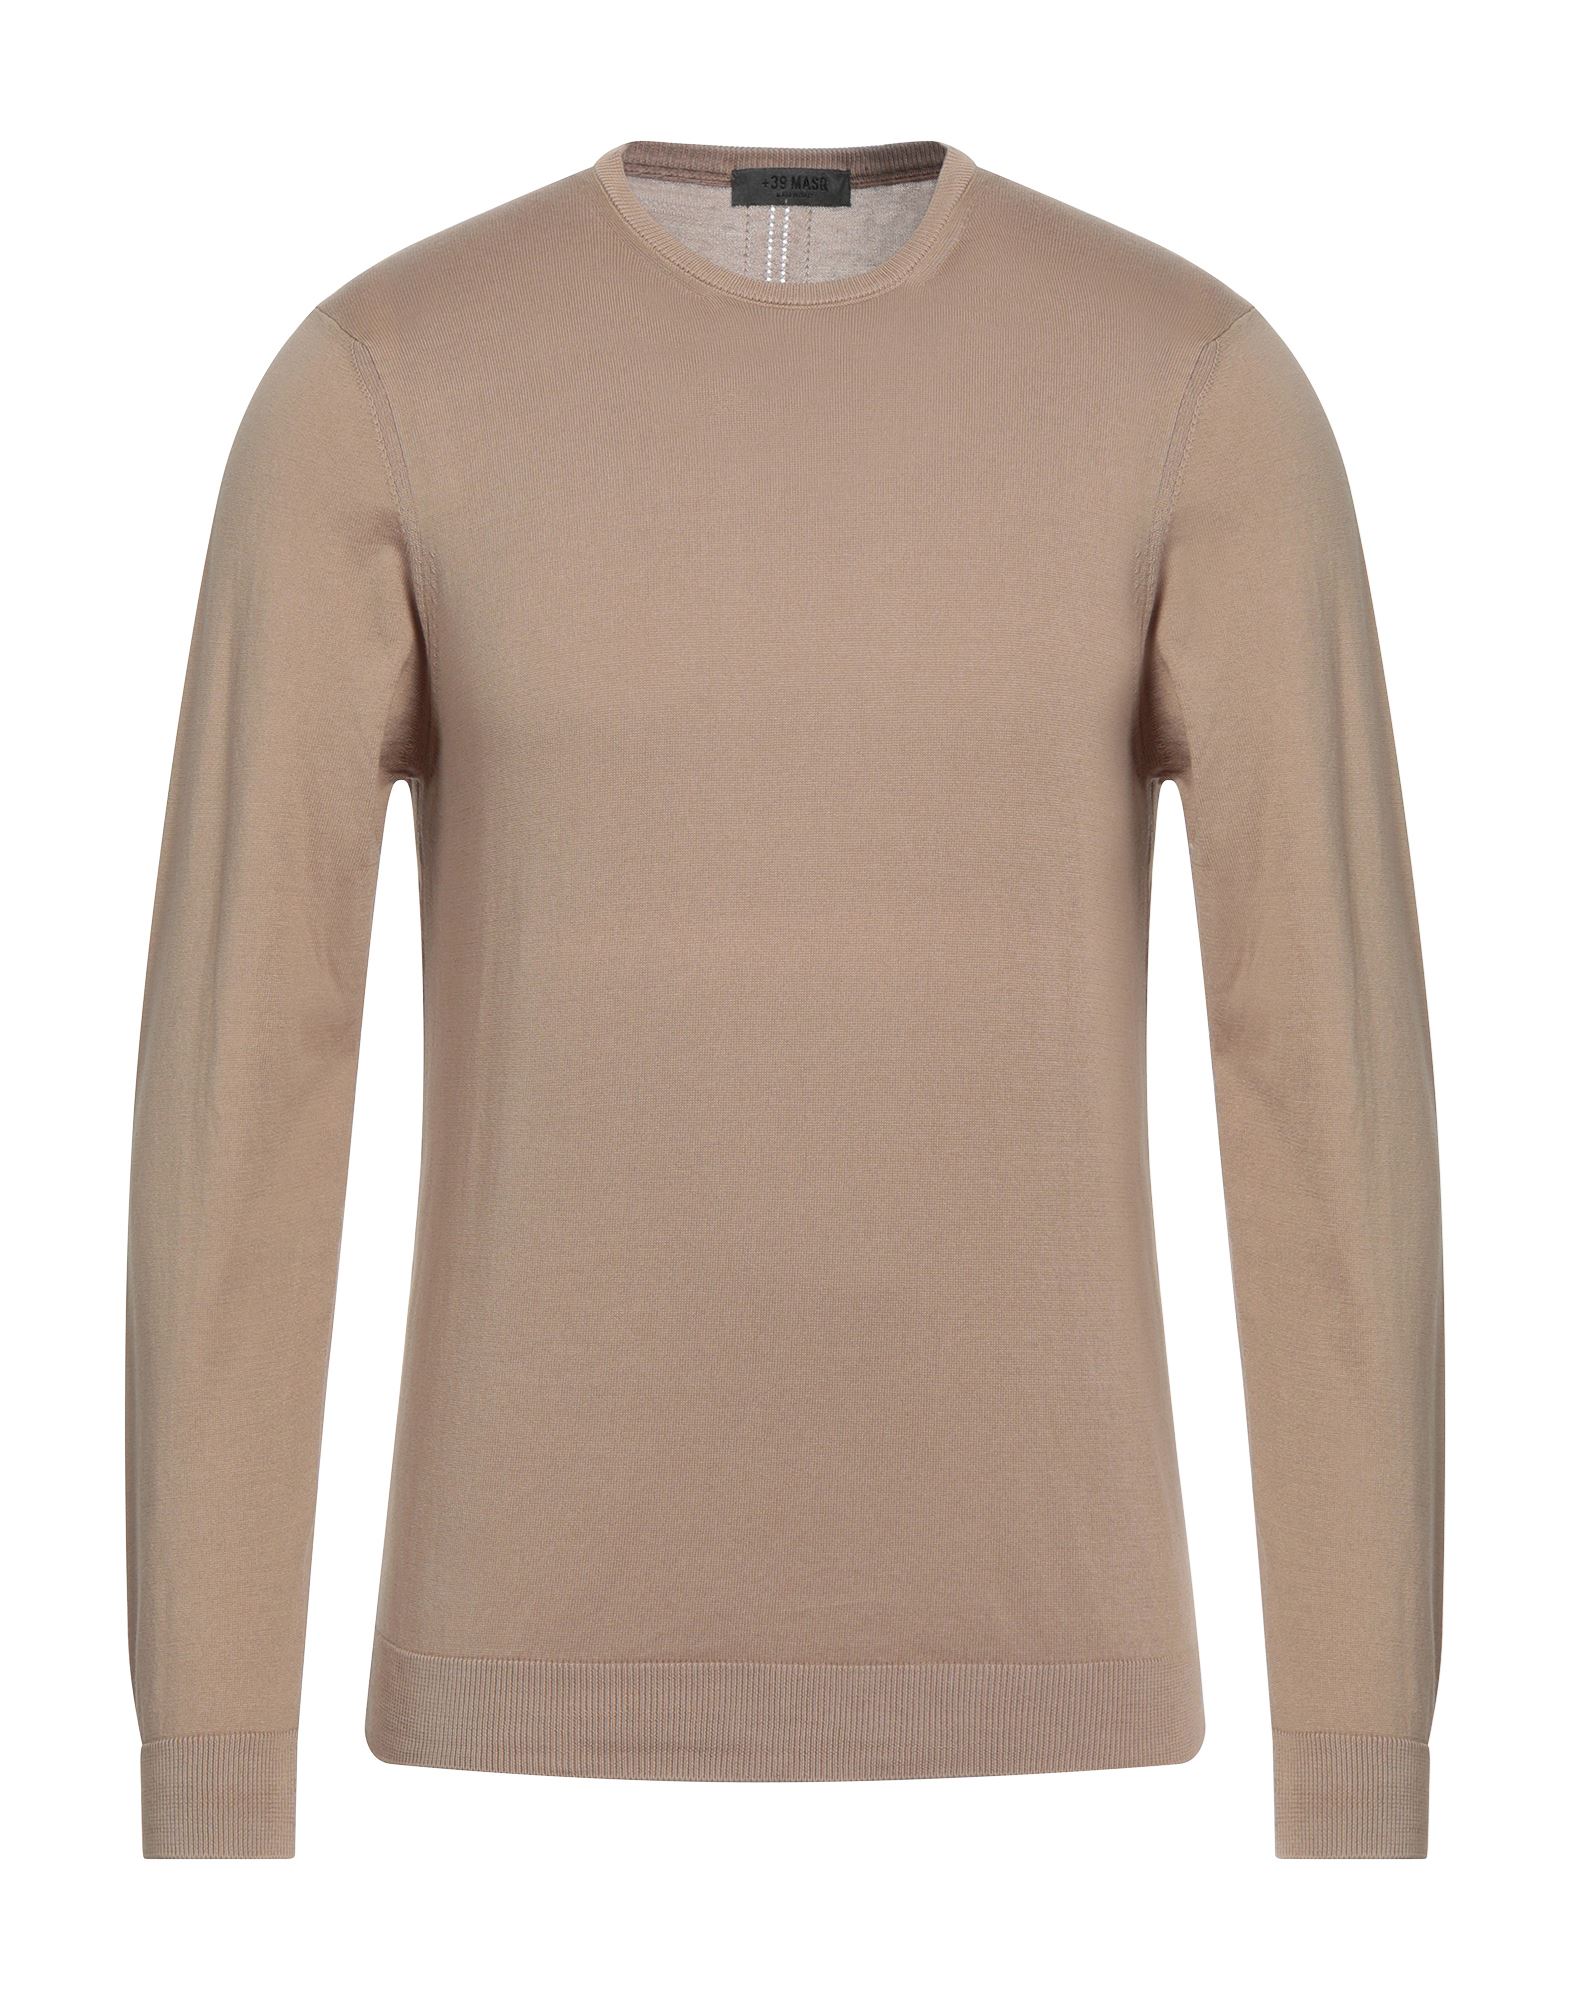 +39 Masq Man Sweater Light Brown Size Xl Cotton In Beige